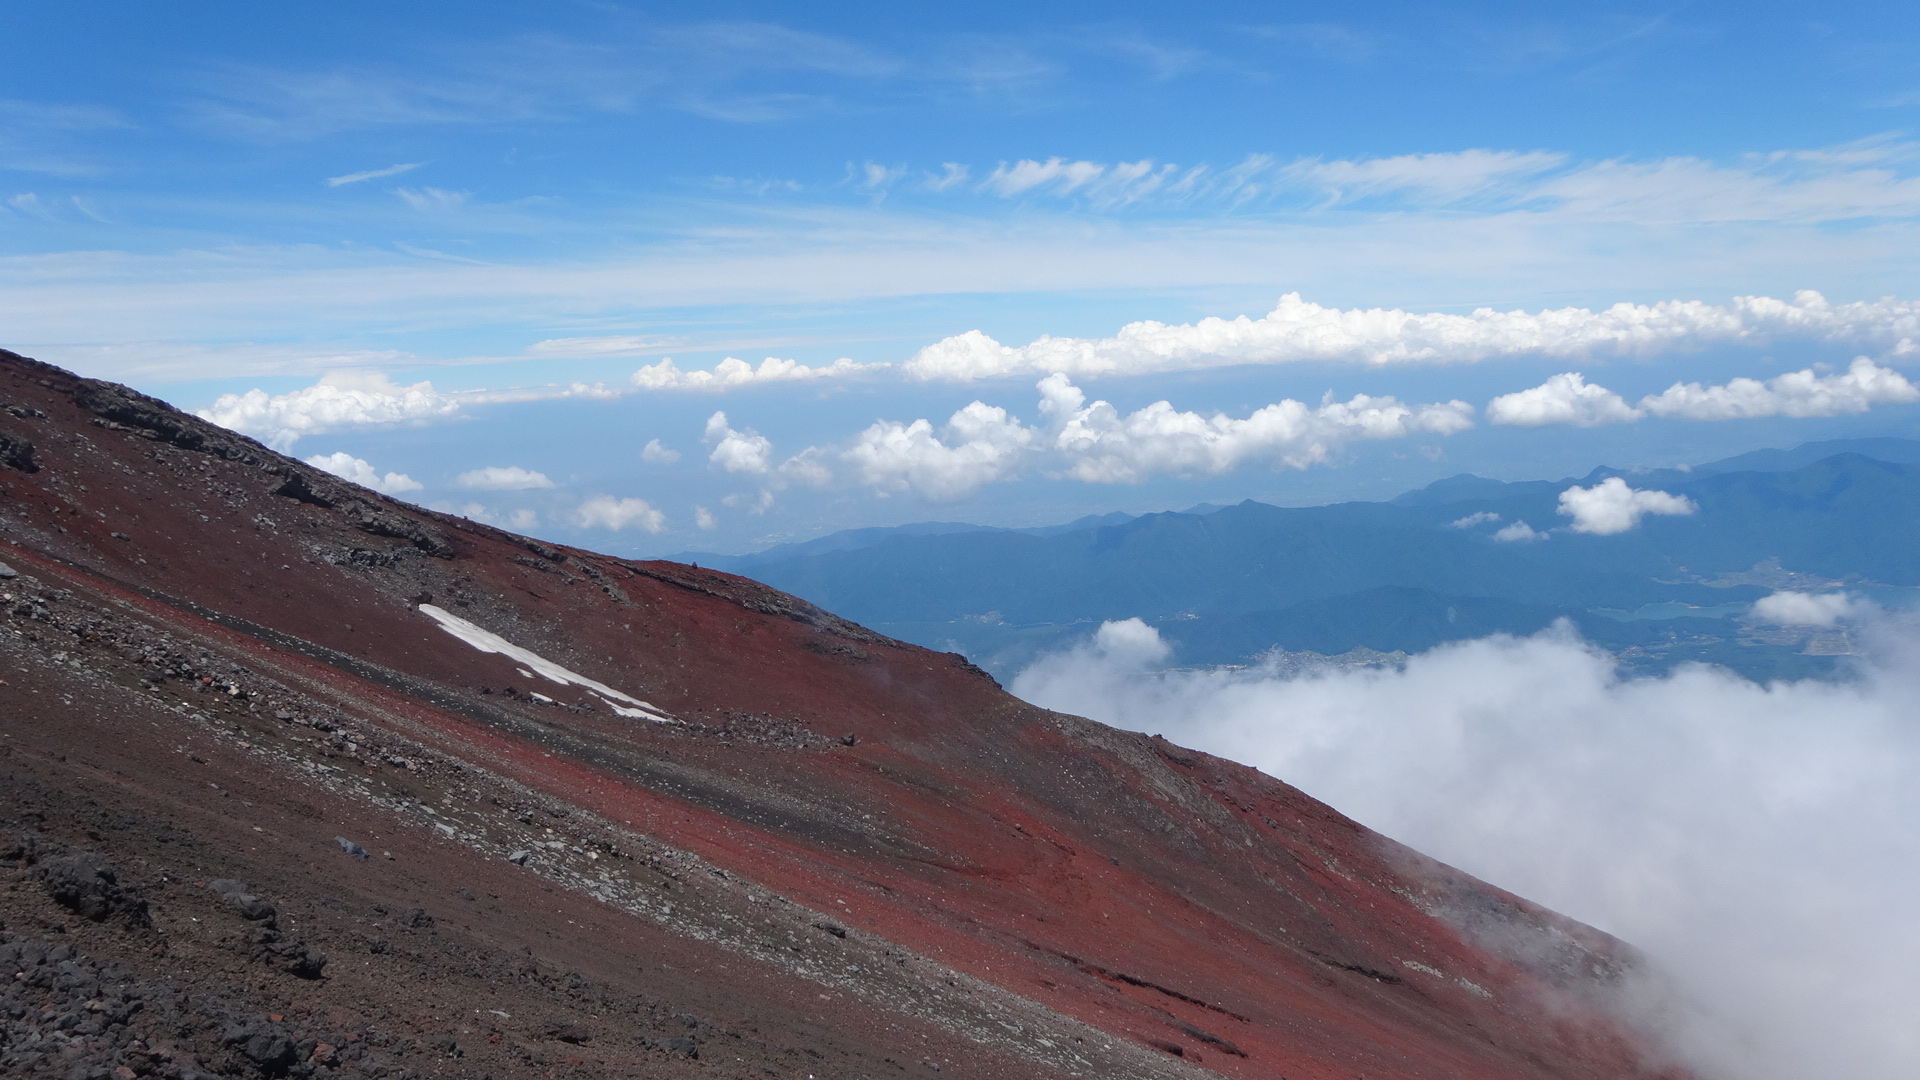  Mont  Fuji  Travers e Yoshida voie normale descente 